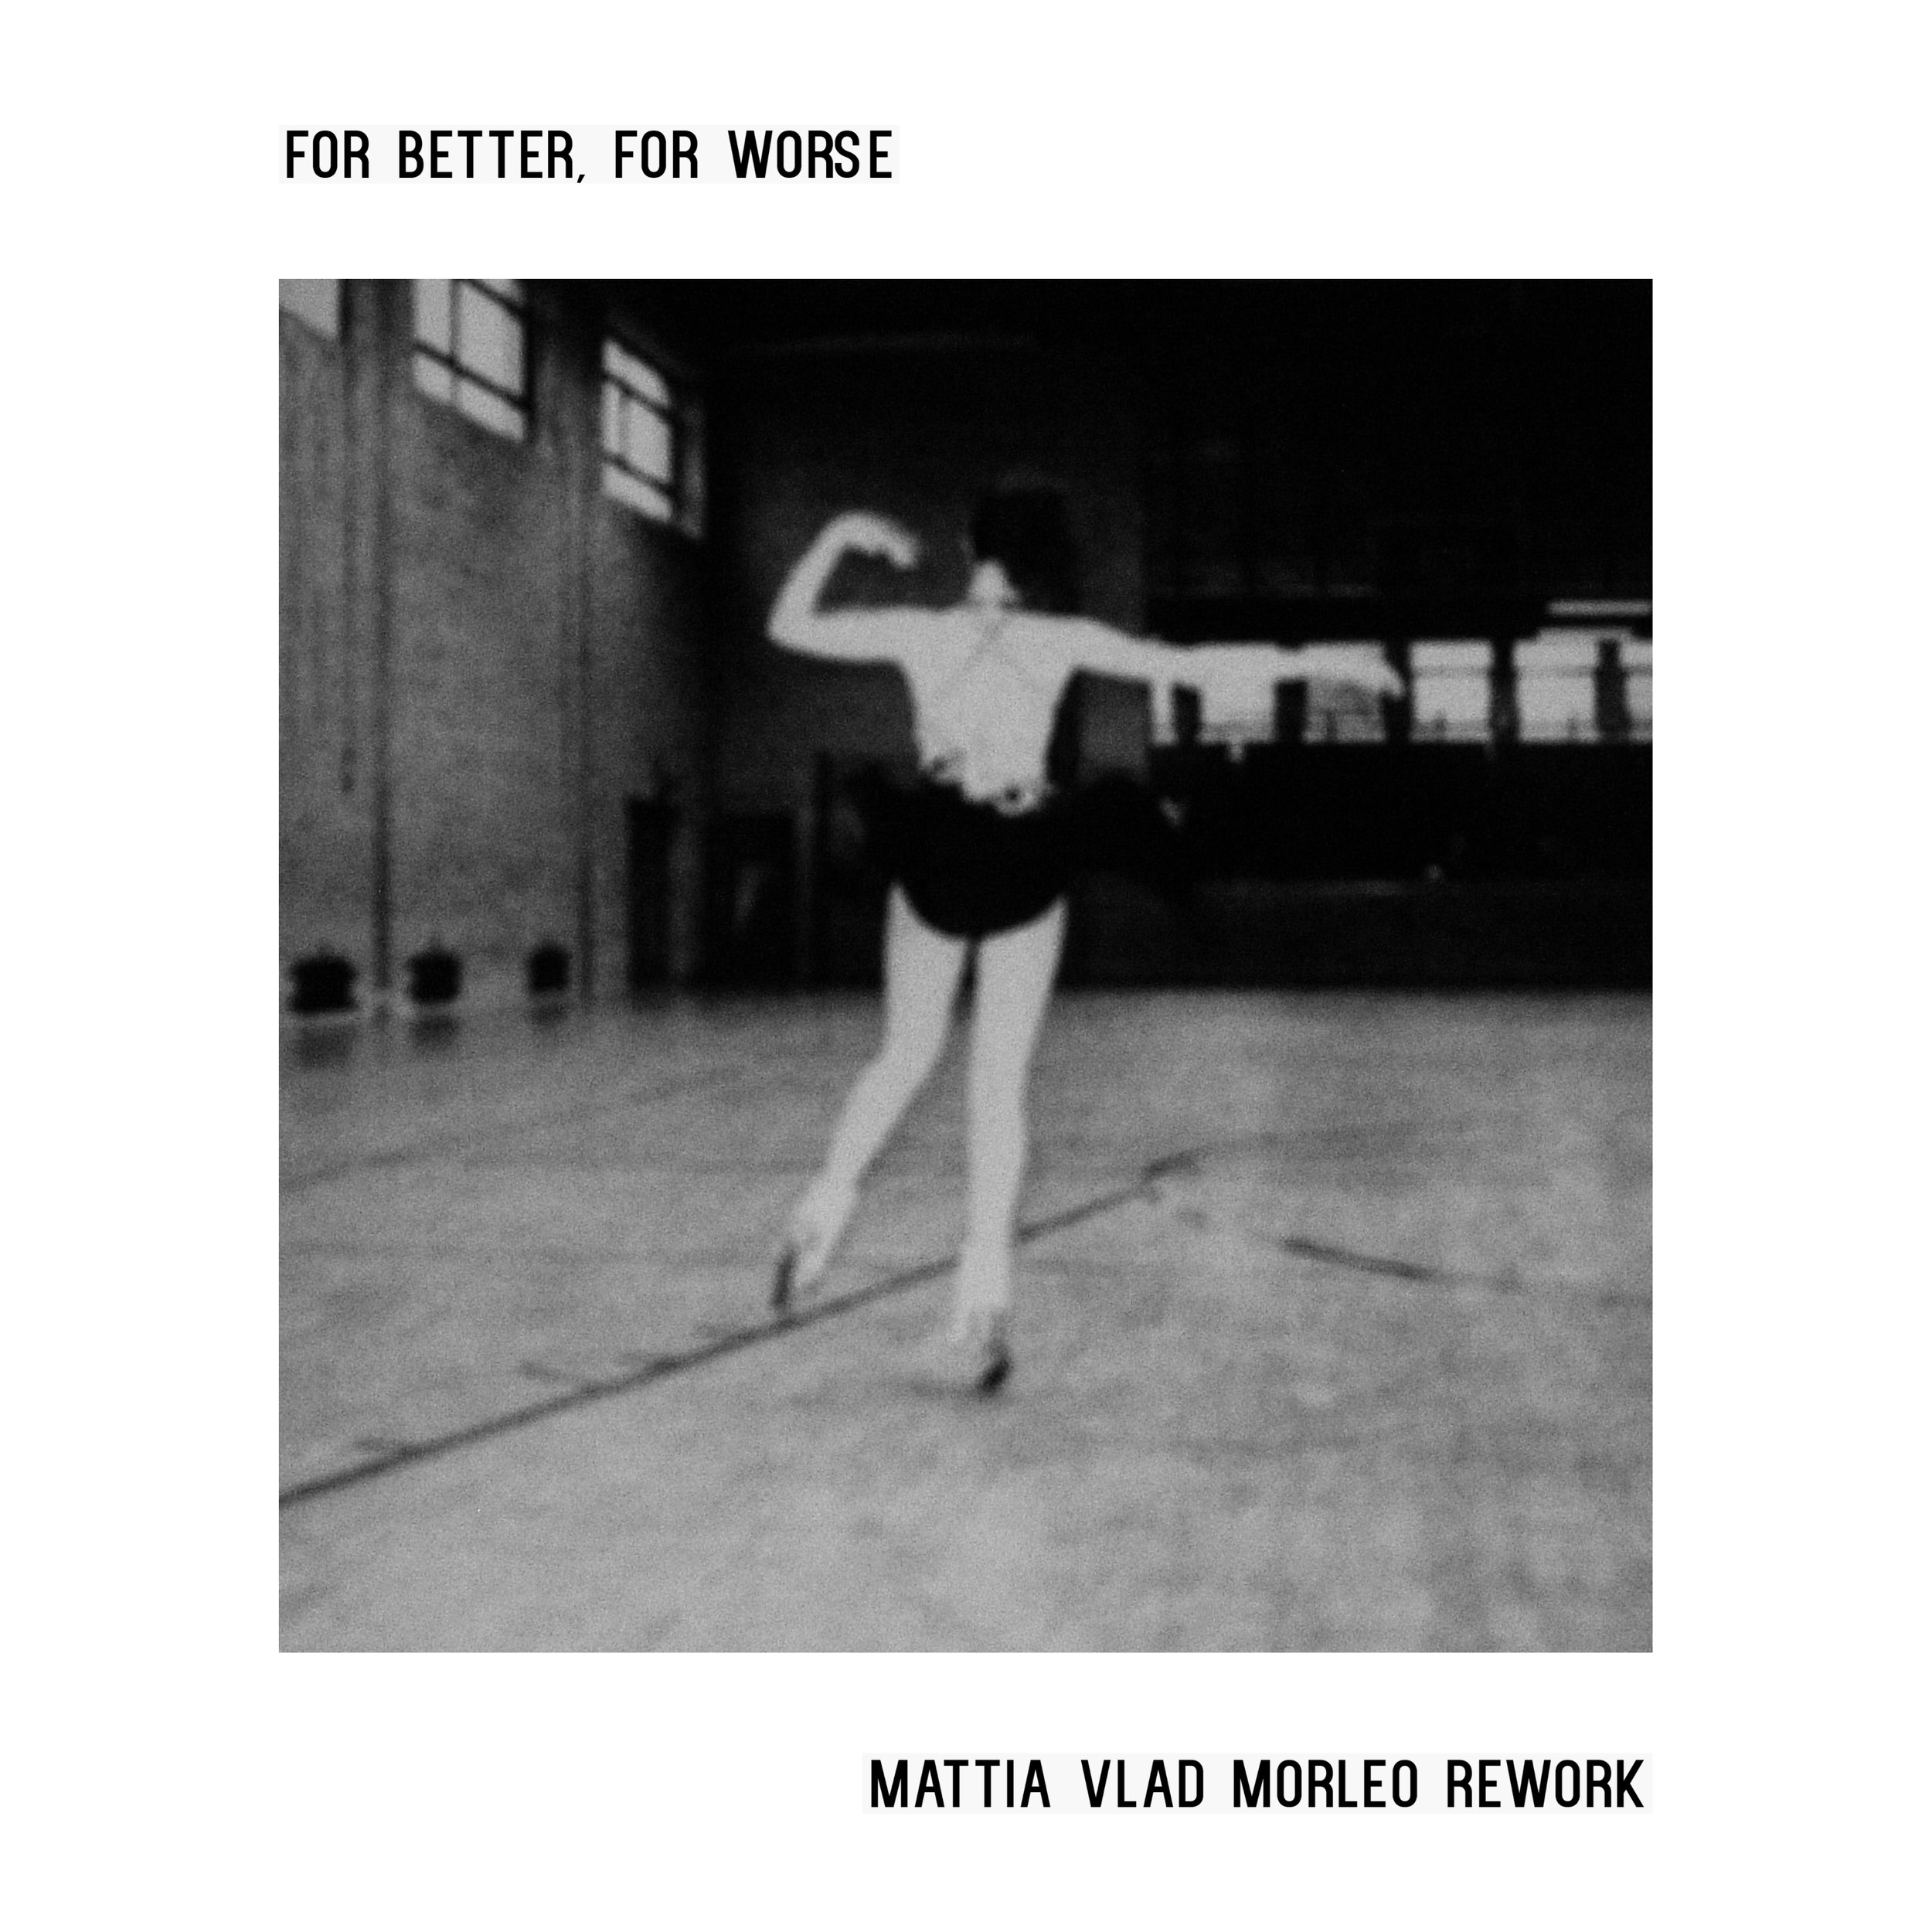 Cover - For better for worse - mattia vlad morleo rework.jpg